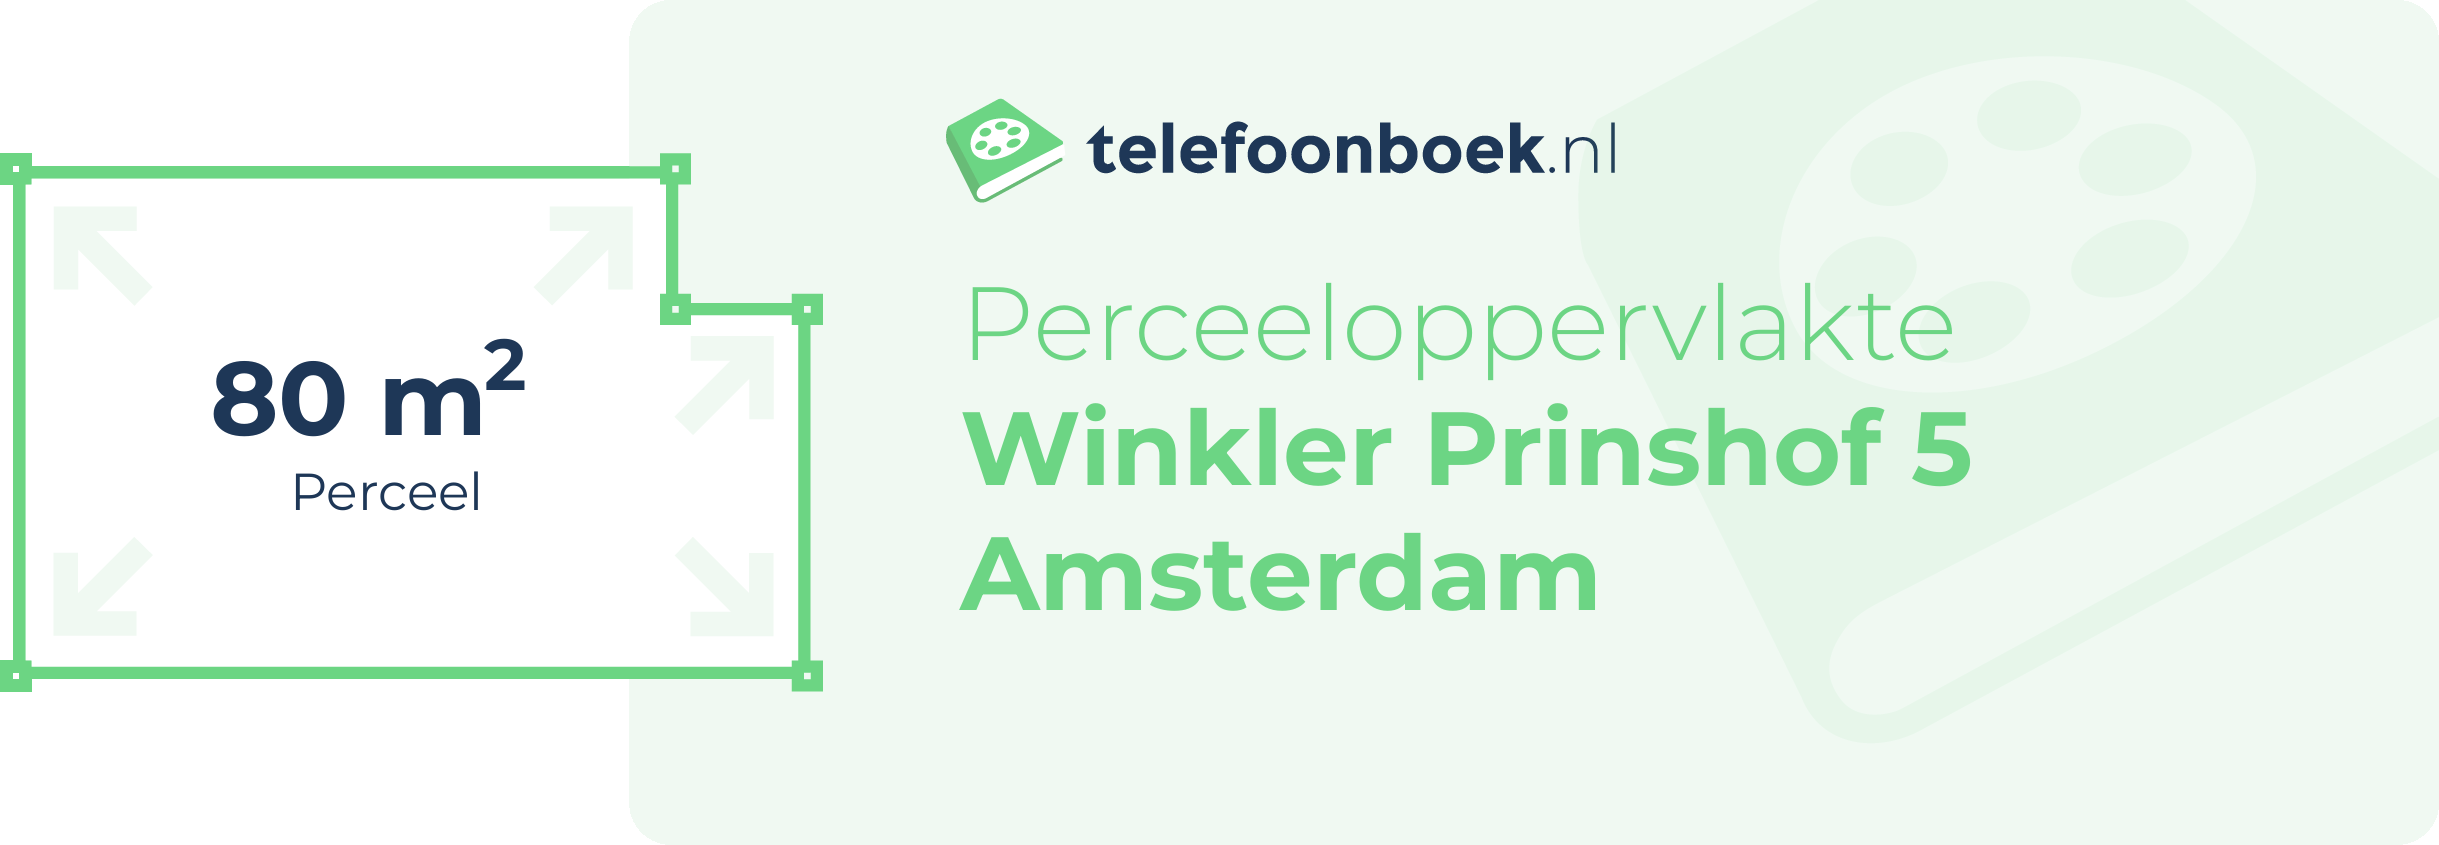 Perceeloppervlakte Winkler Prinshof 5 Amsterdam